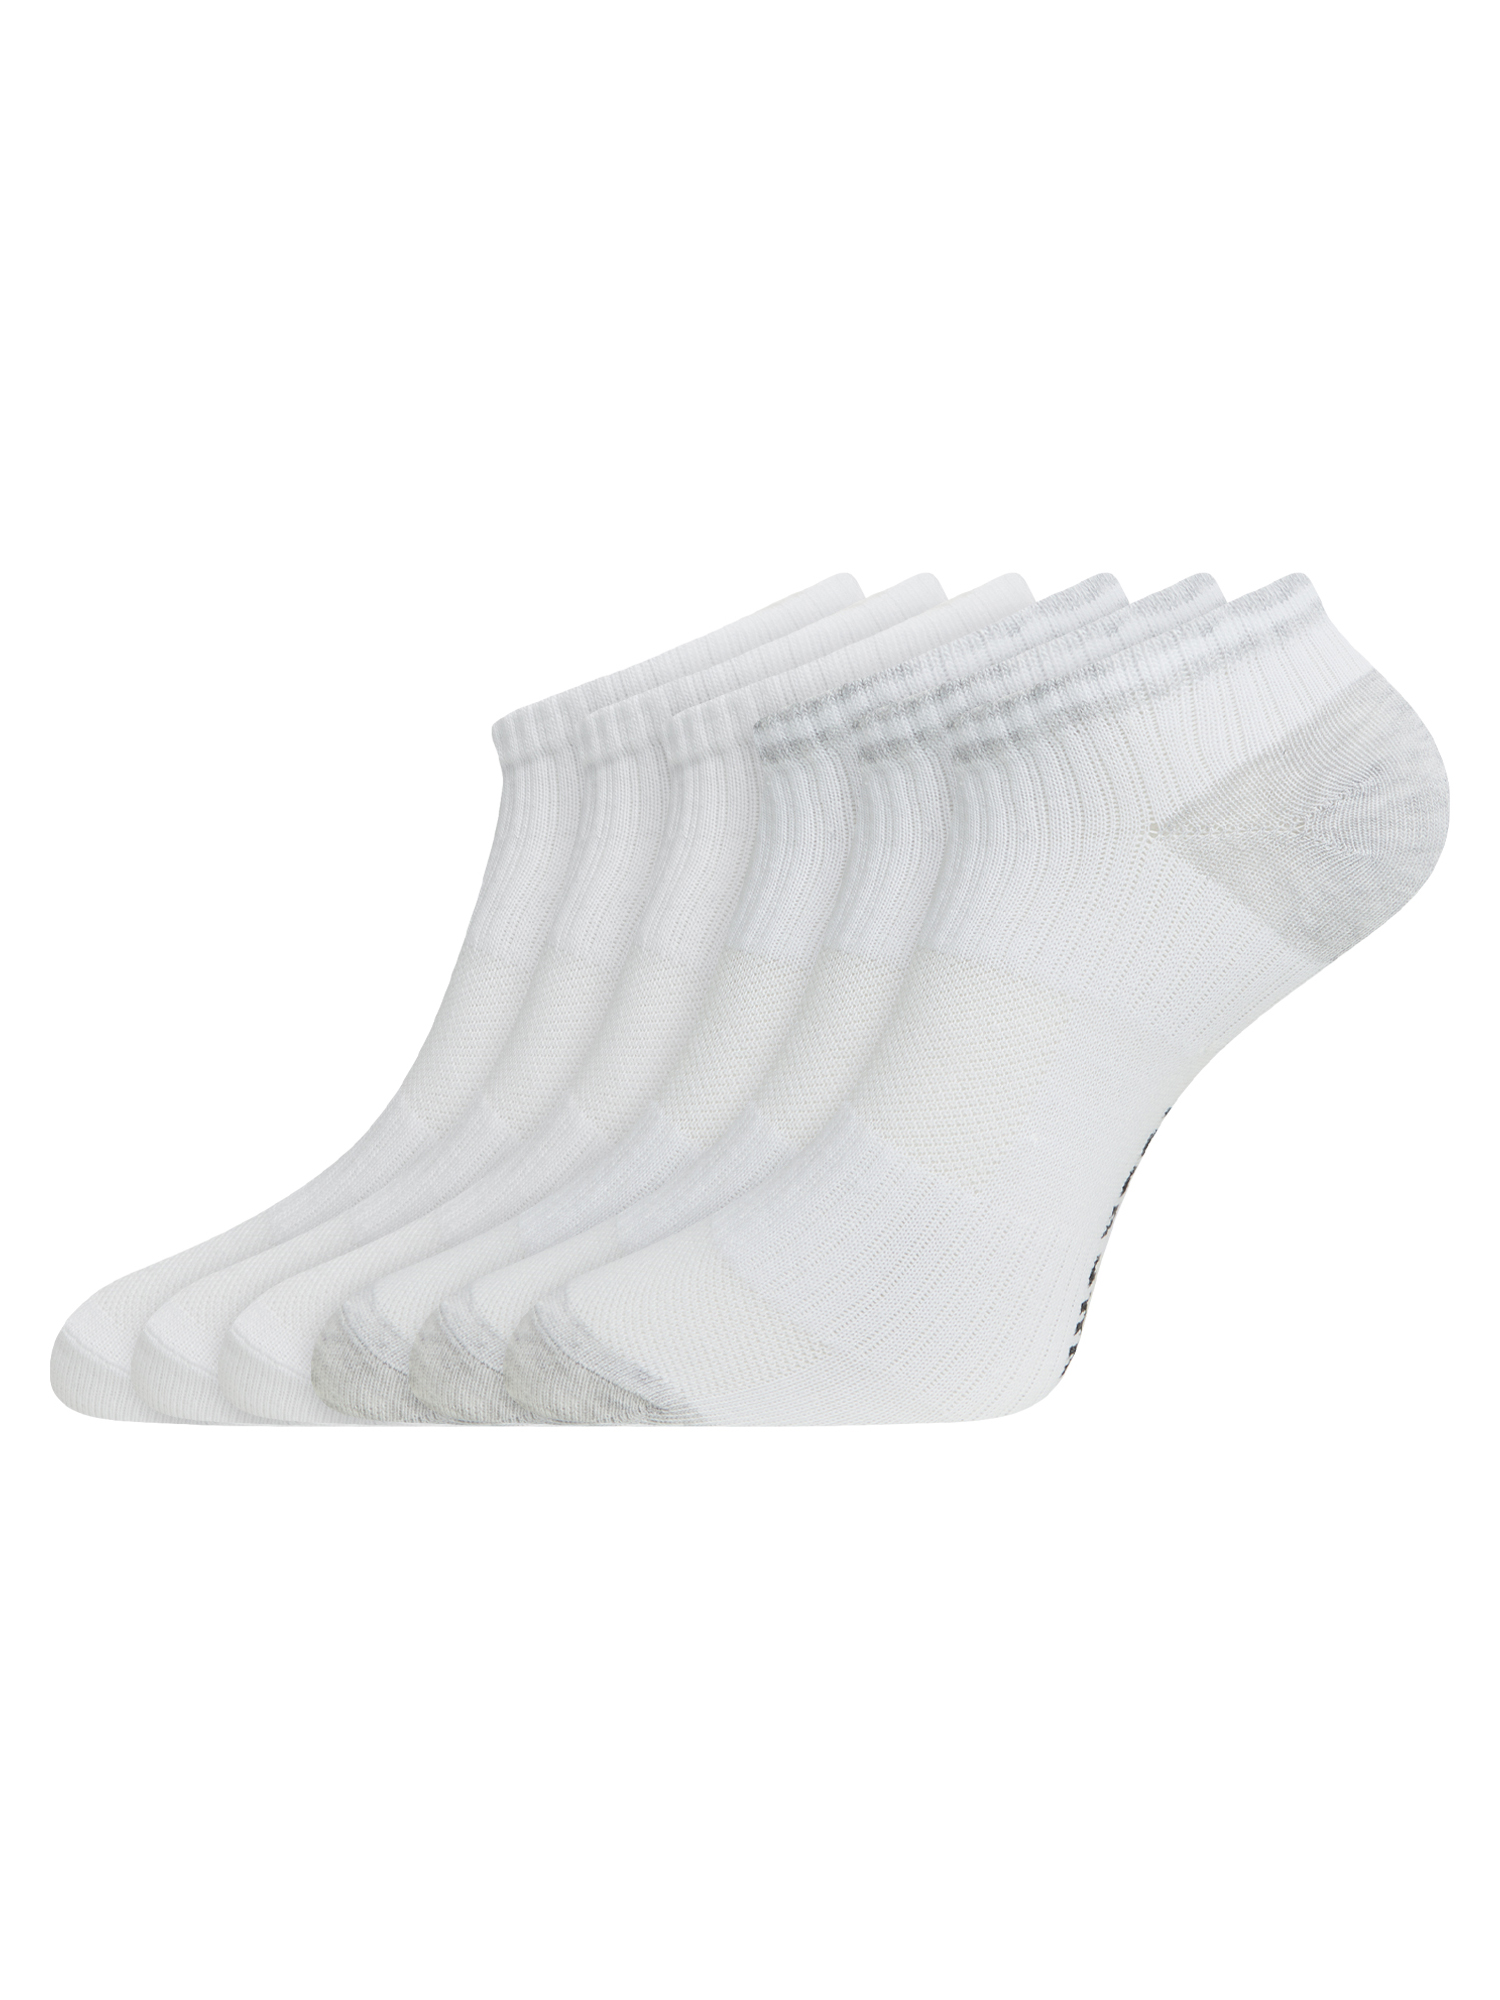 Комплект носков женских oodji 57102610T6 белых 35-37